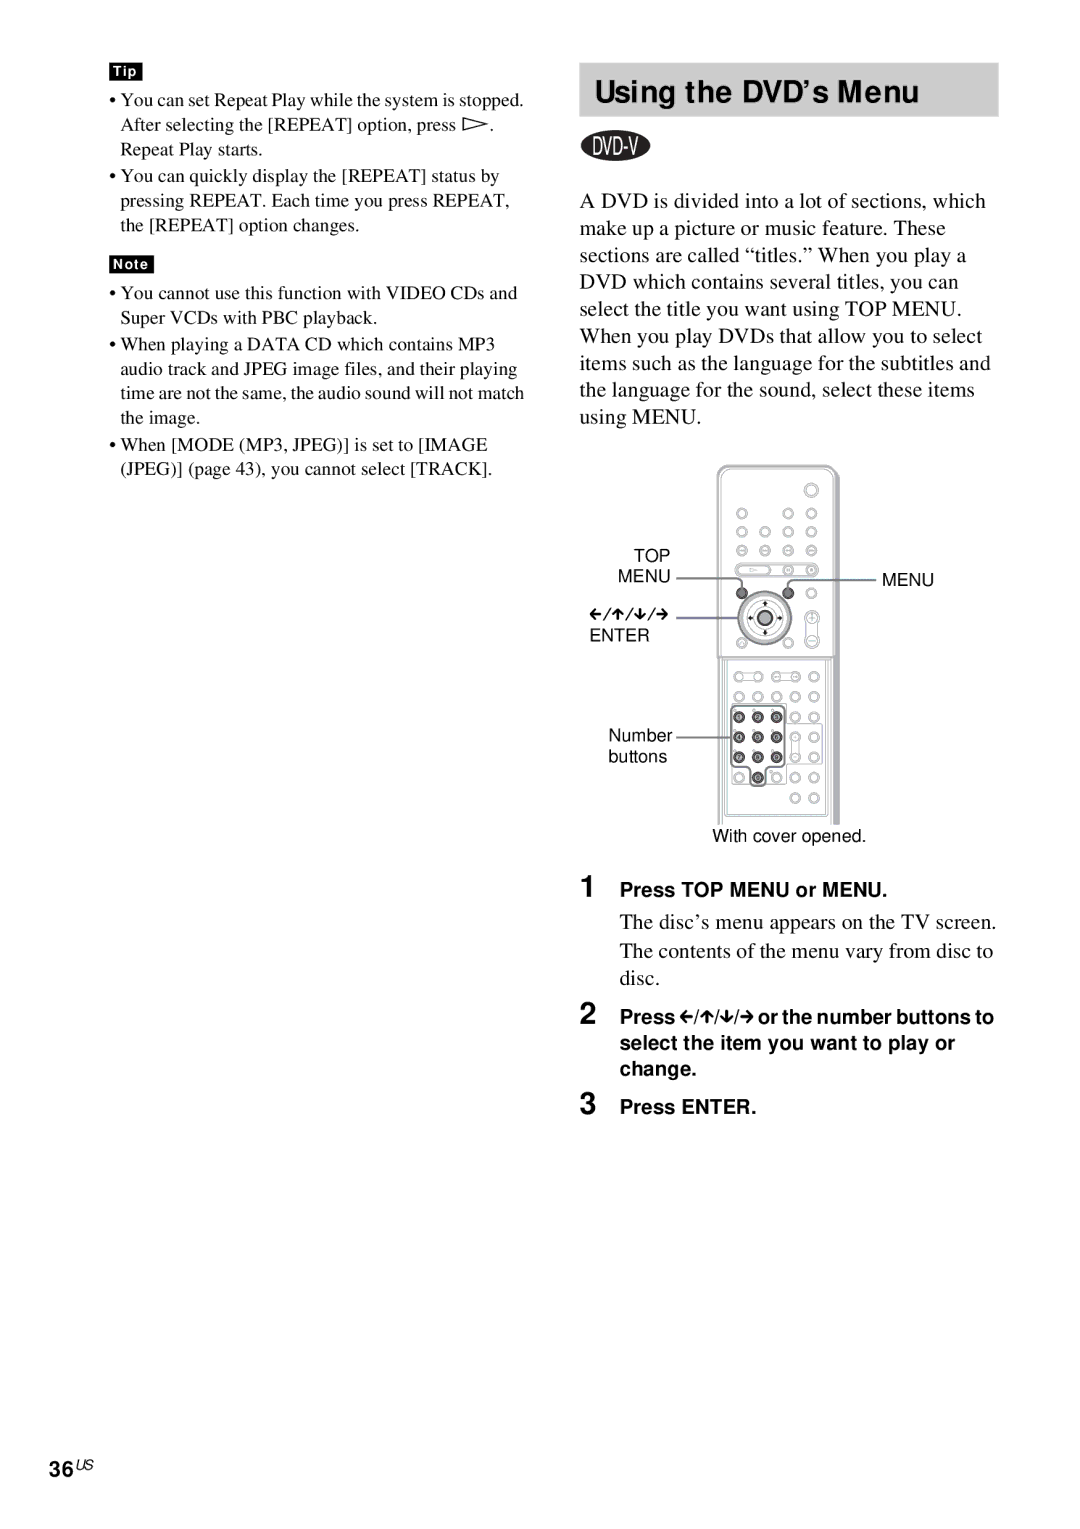 Sony DAV-FX10 manual Using the DVD’s Menu, 36US, Press TOP Menu or Menu 